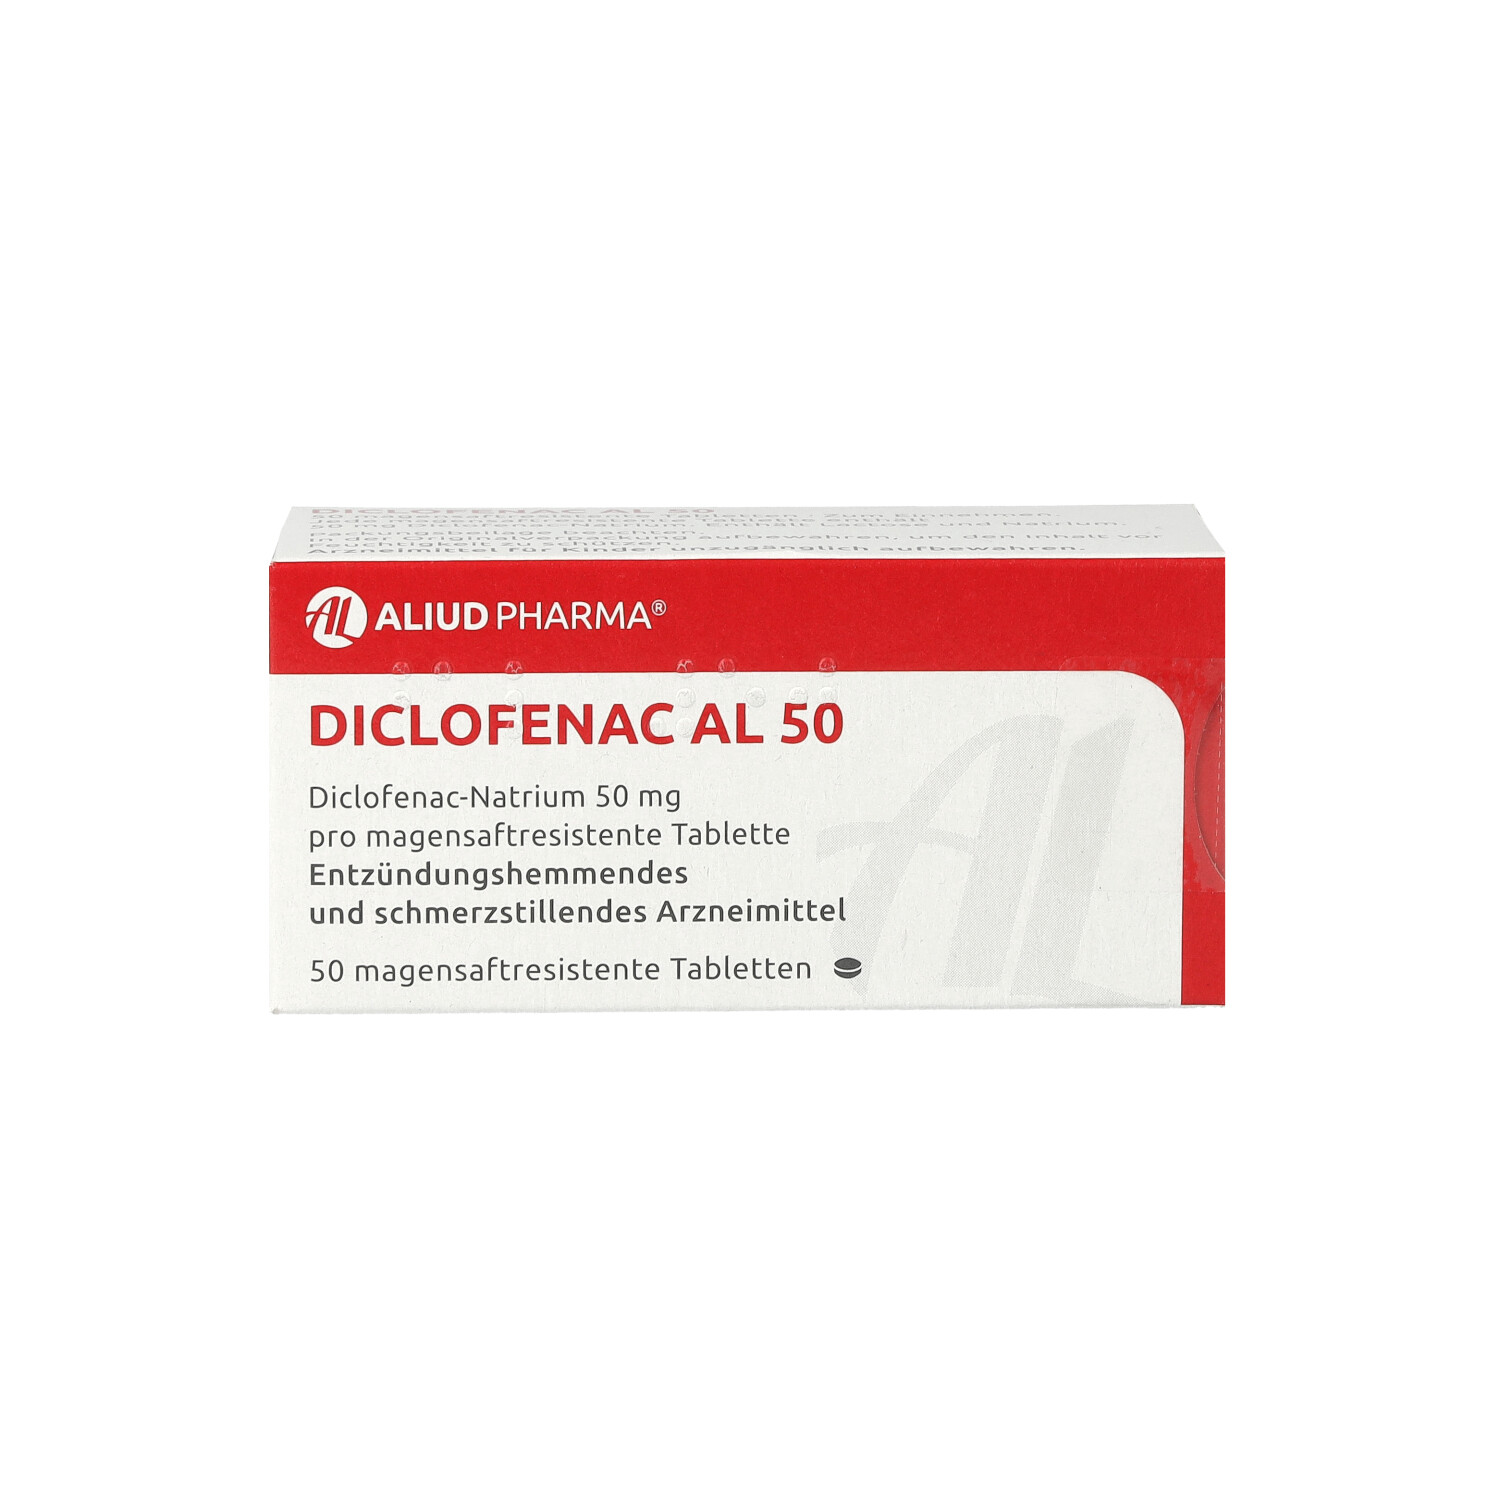 DICLOFENAC AL 50 magensaftresistente Tabletten